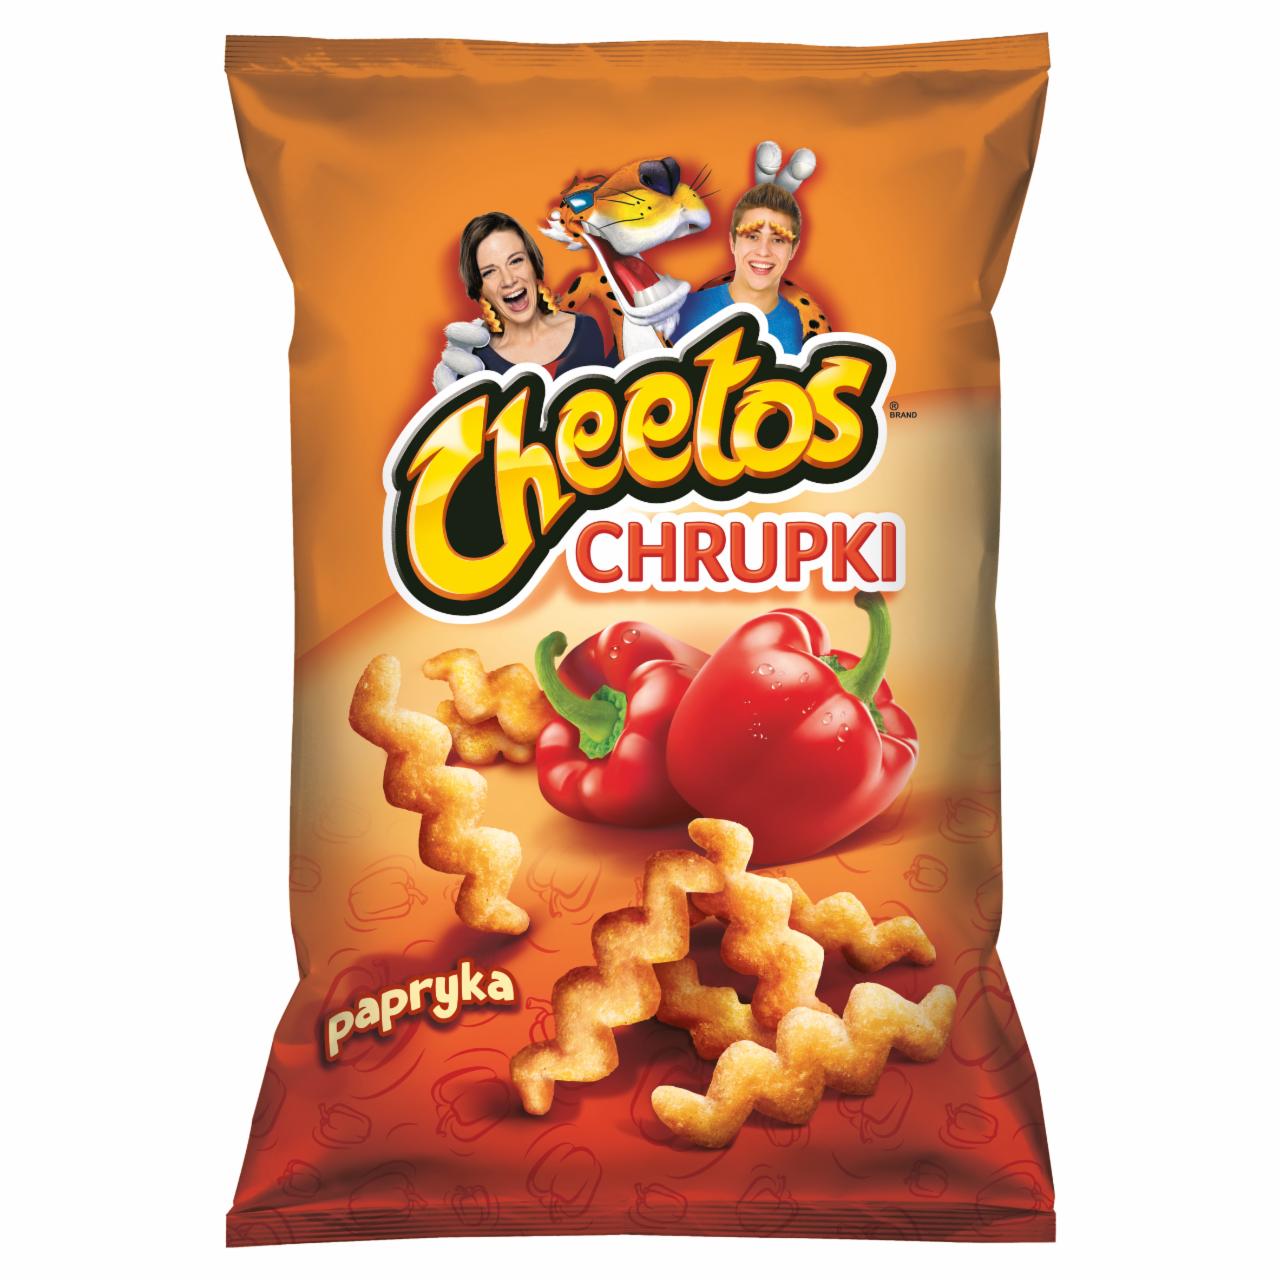 Zdjęcia - Cheetos Chrupki kukurydziane o smaku papryki 145 g